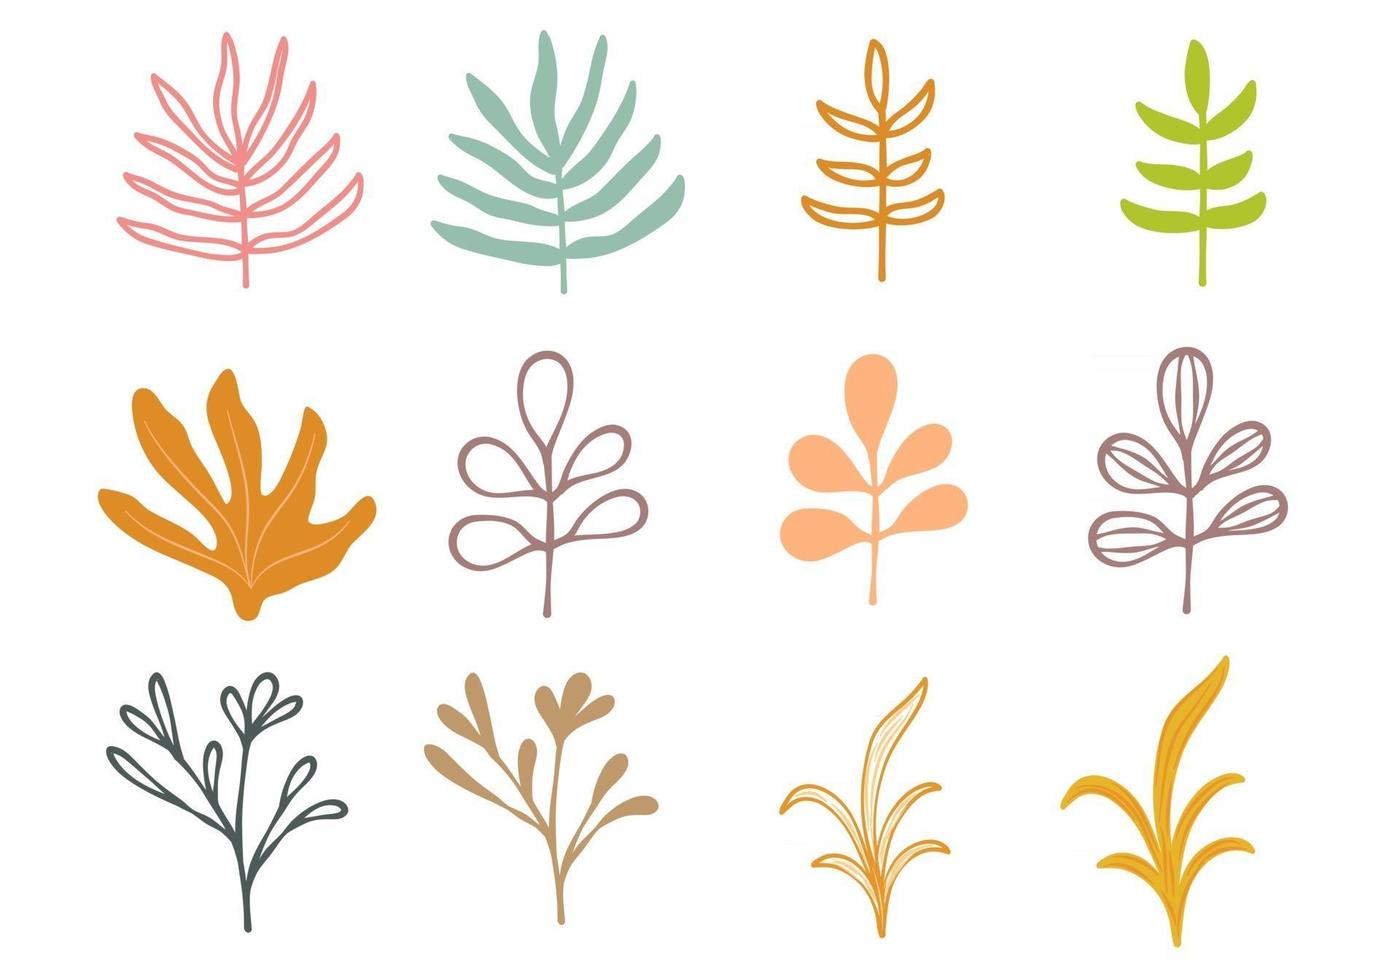 tallo y hojas coloridos dibujados a mano vector